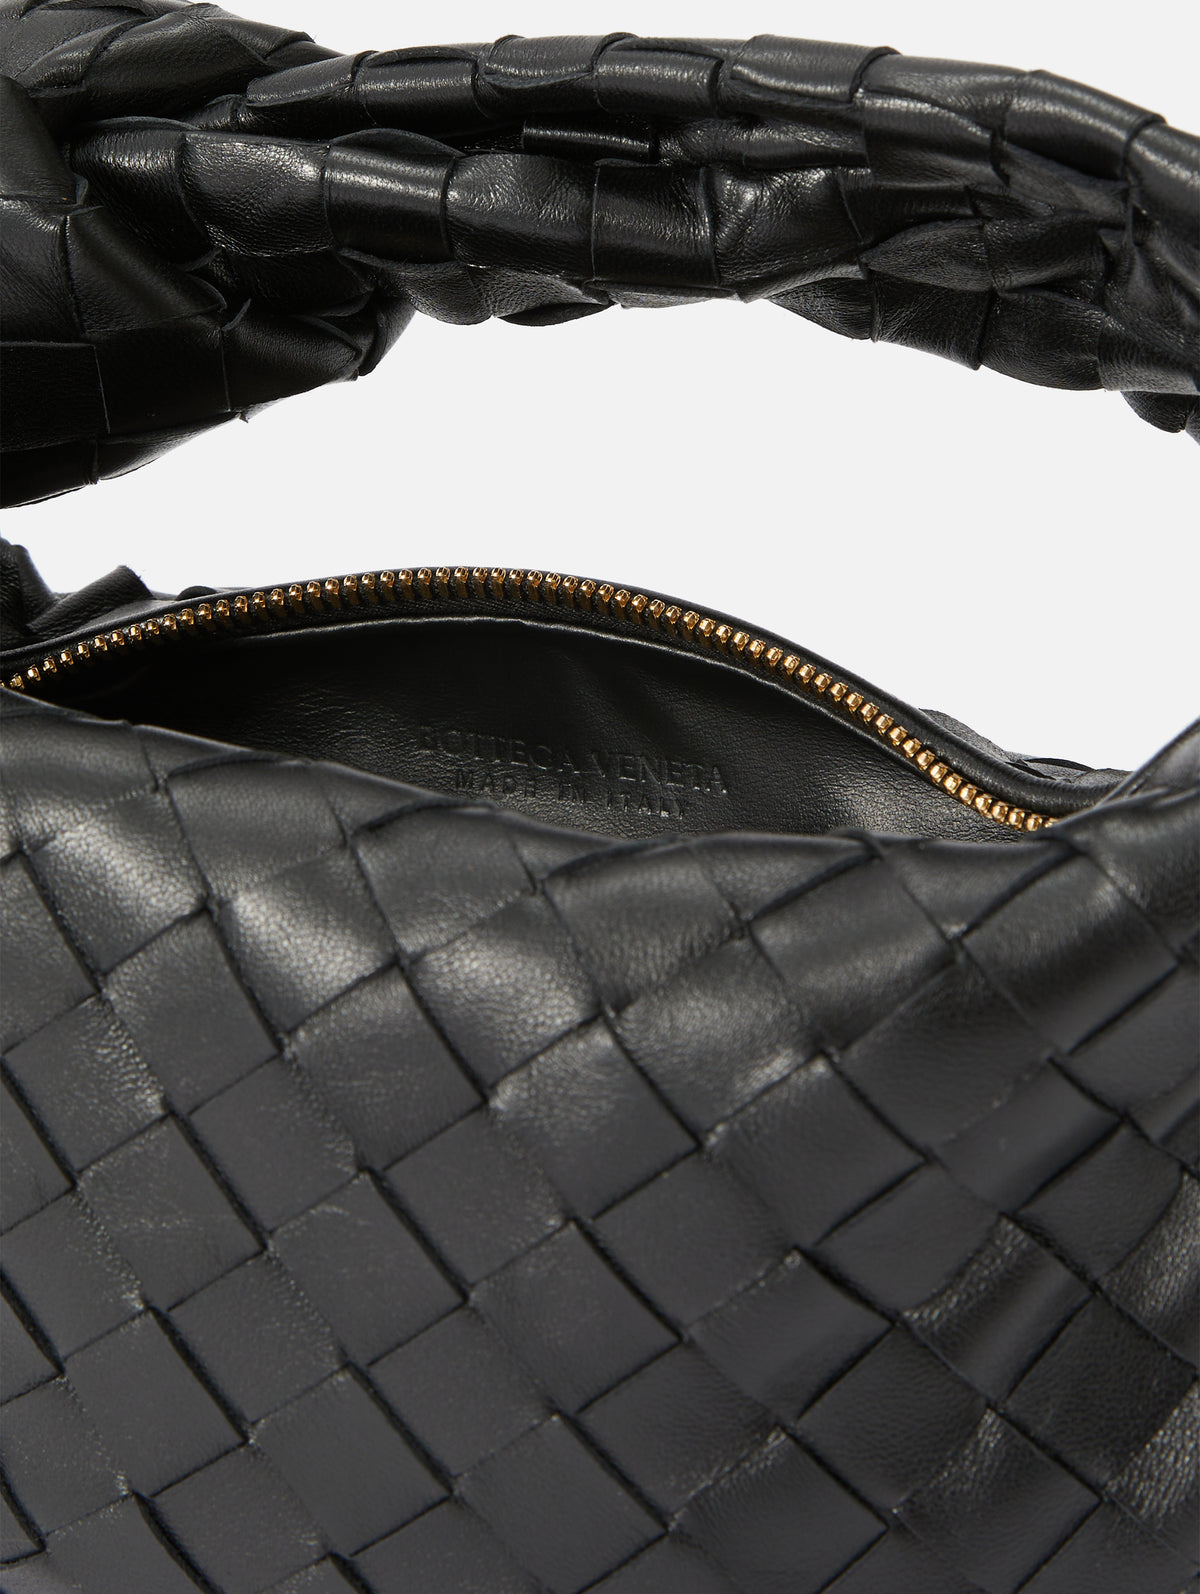 Bottega Veneta Mini Jodie Hobo Bag Black Intrecciato Leather